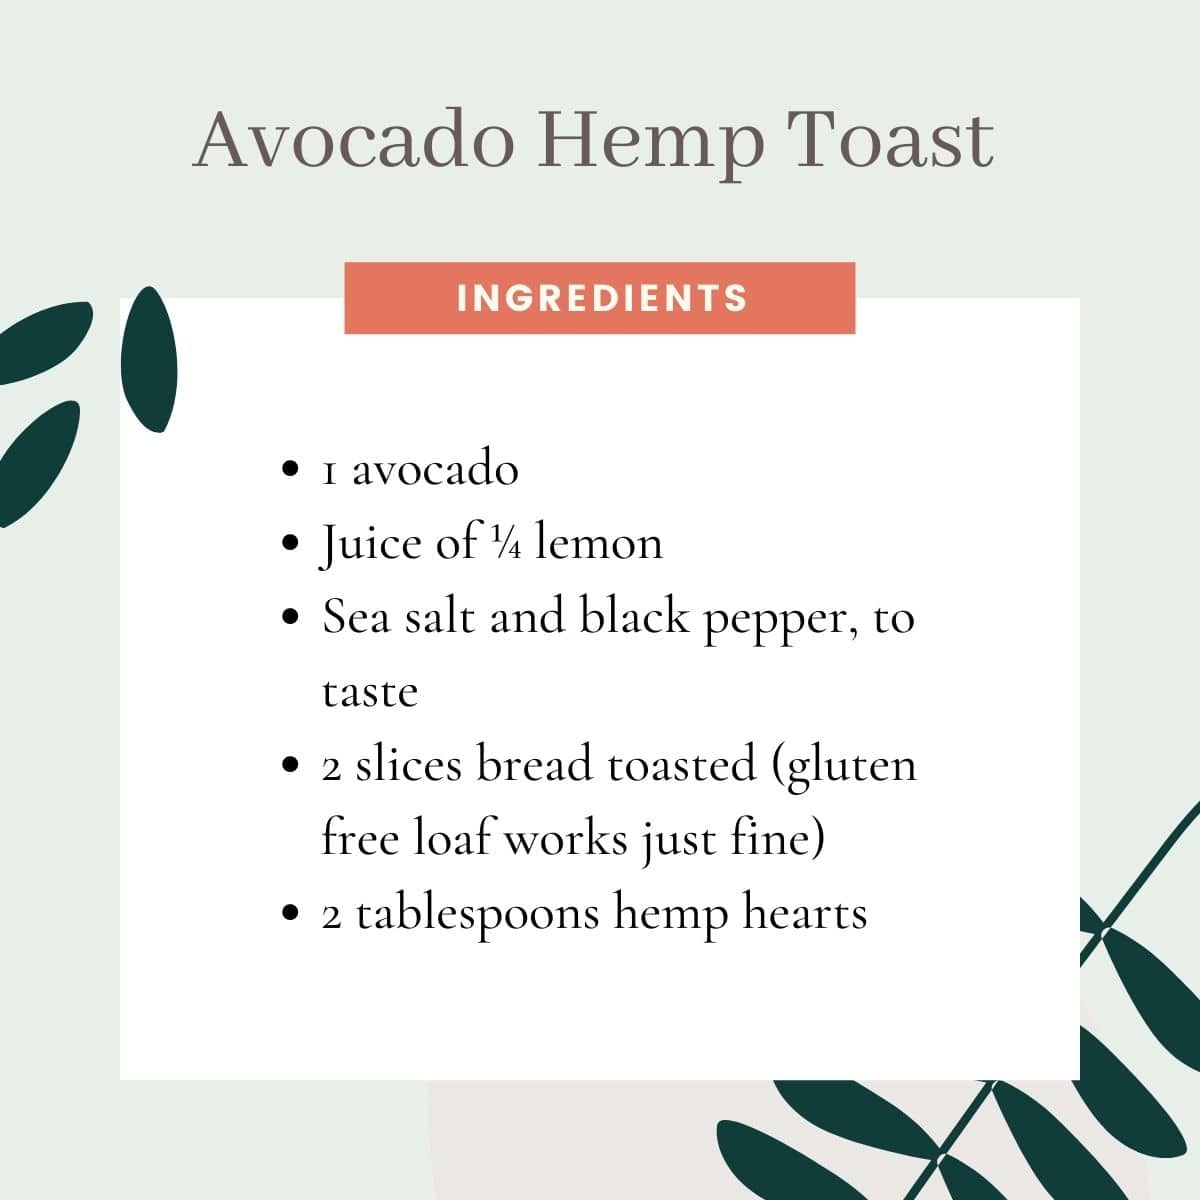 Avocado hemp toast recipe